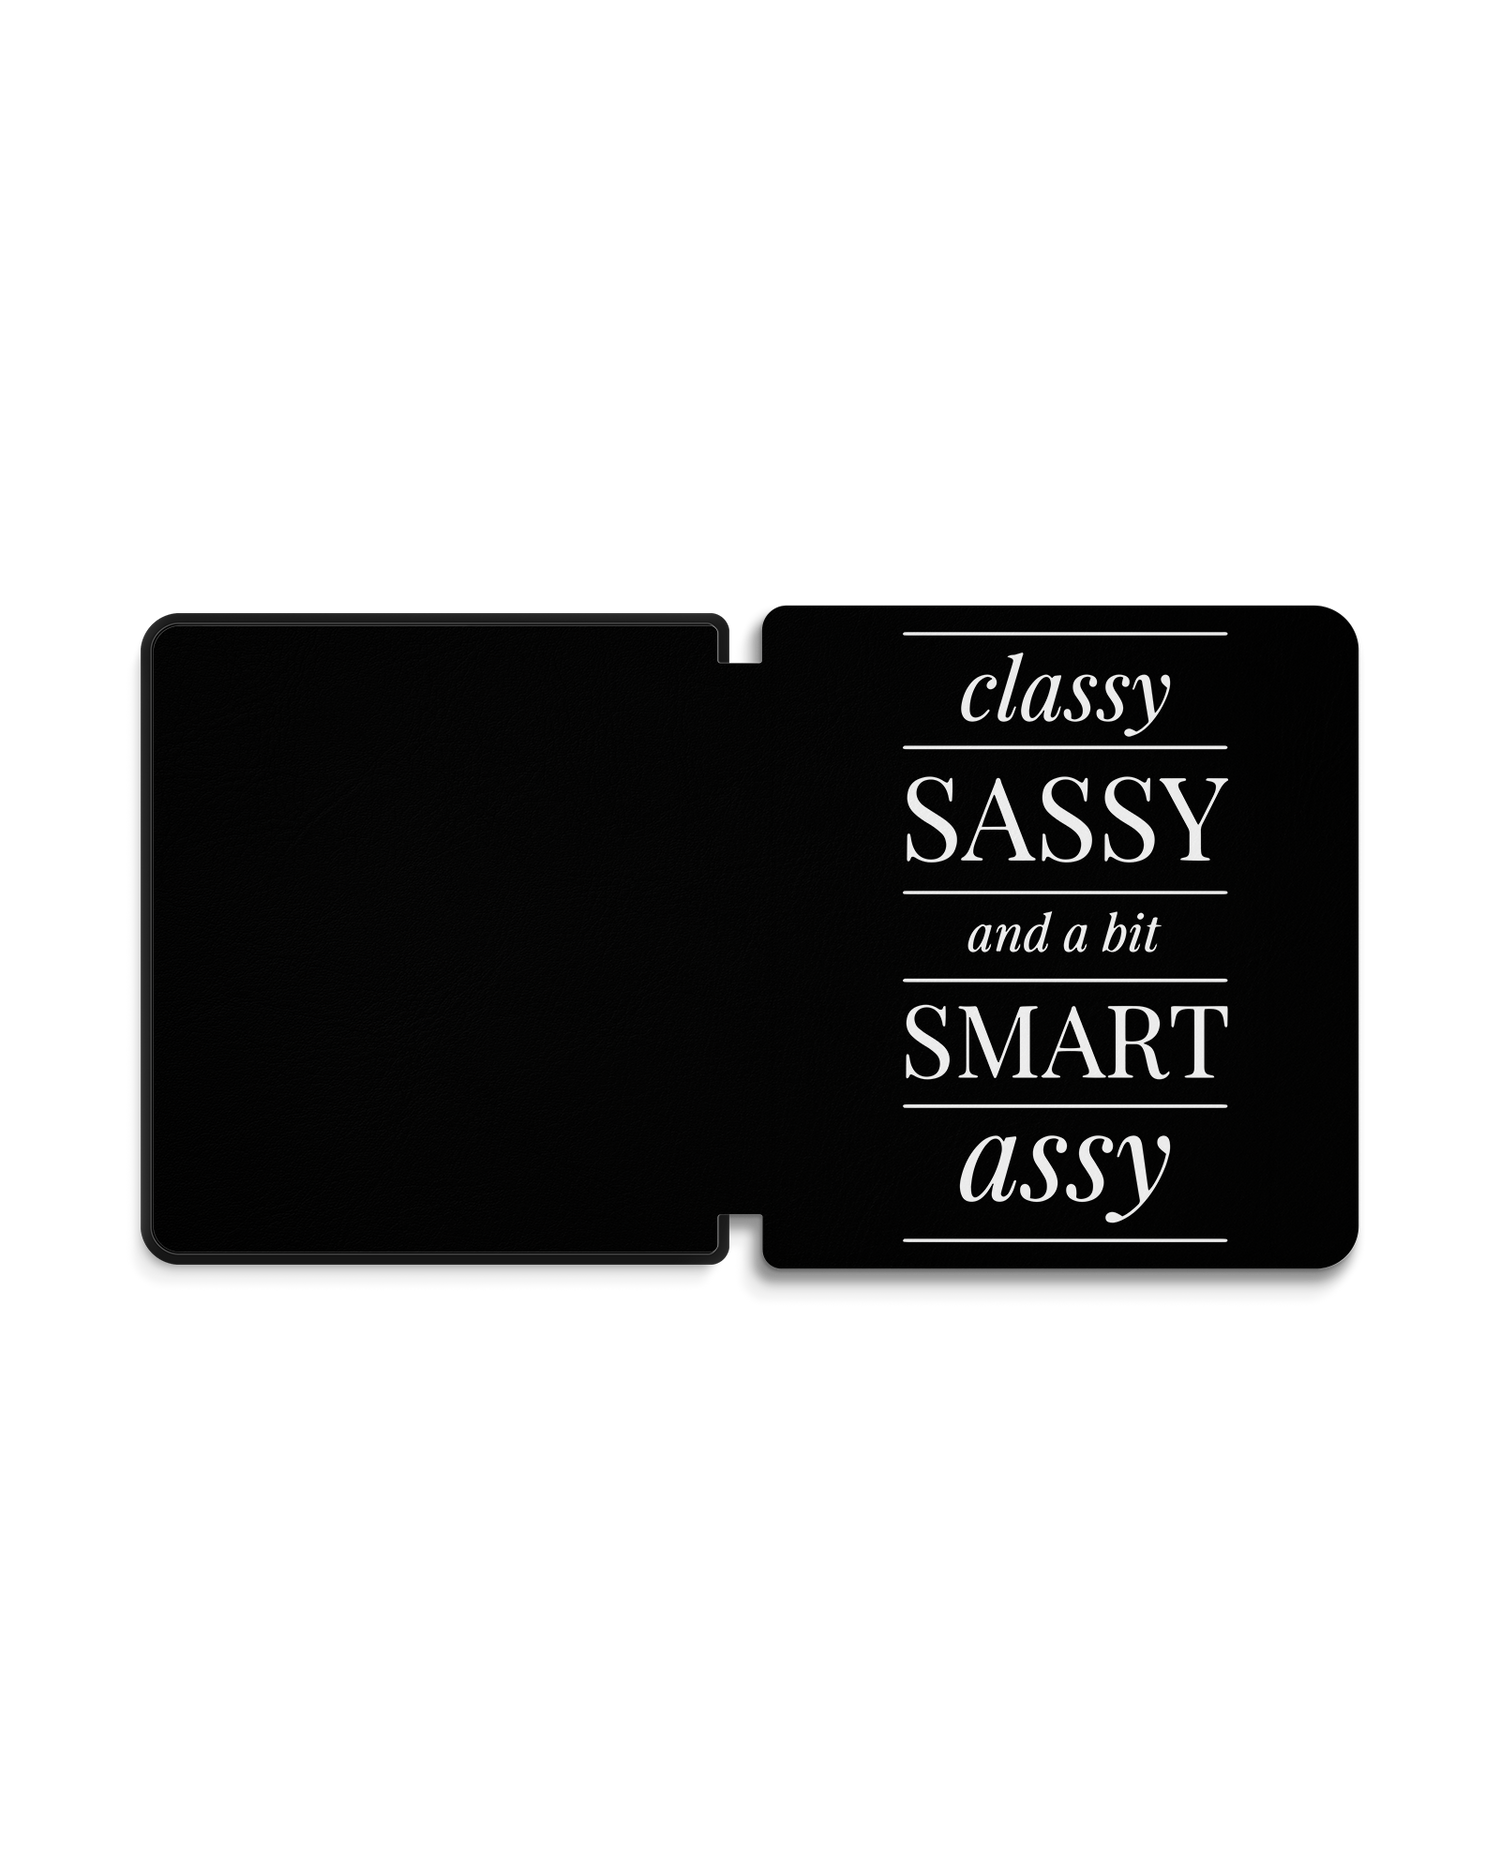 Classy Sassy eBook Reader Smart Case für tolino epos 2: Geöffnet Außenansicht